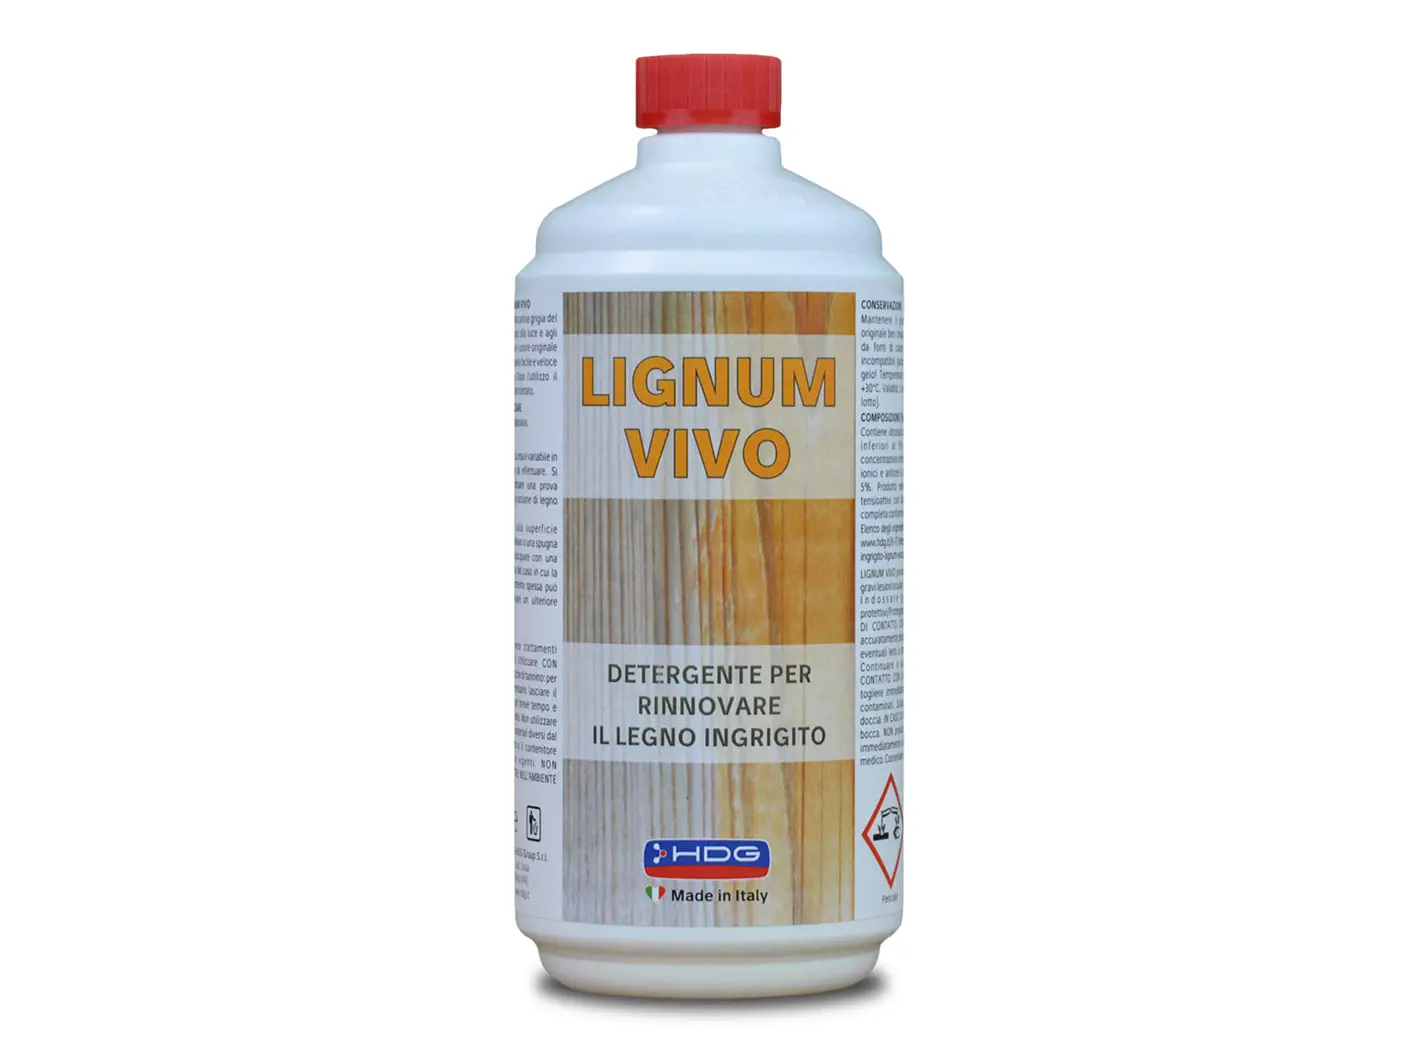 Lignum-vivo-1-litro.jpg